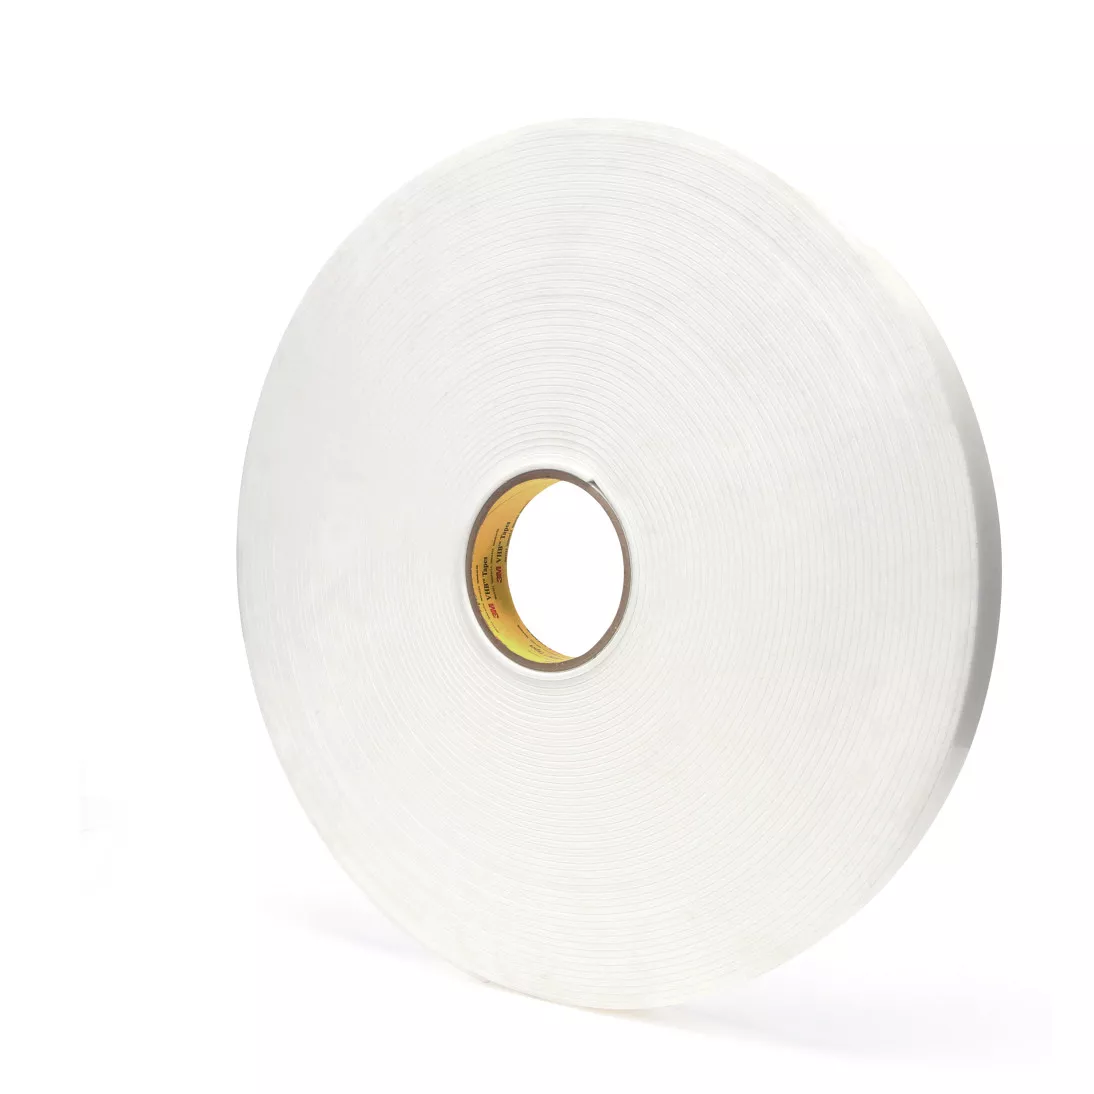 3M™ VHB™ Tape 4959, White, 1 in x 36 yd, 120 mil, 9 rolls per case